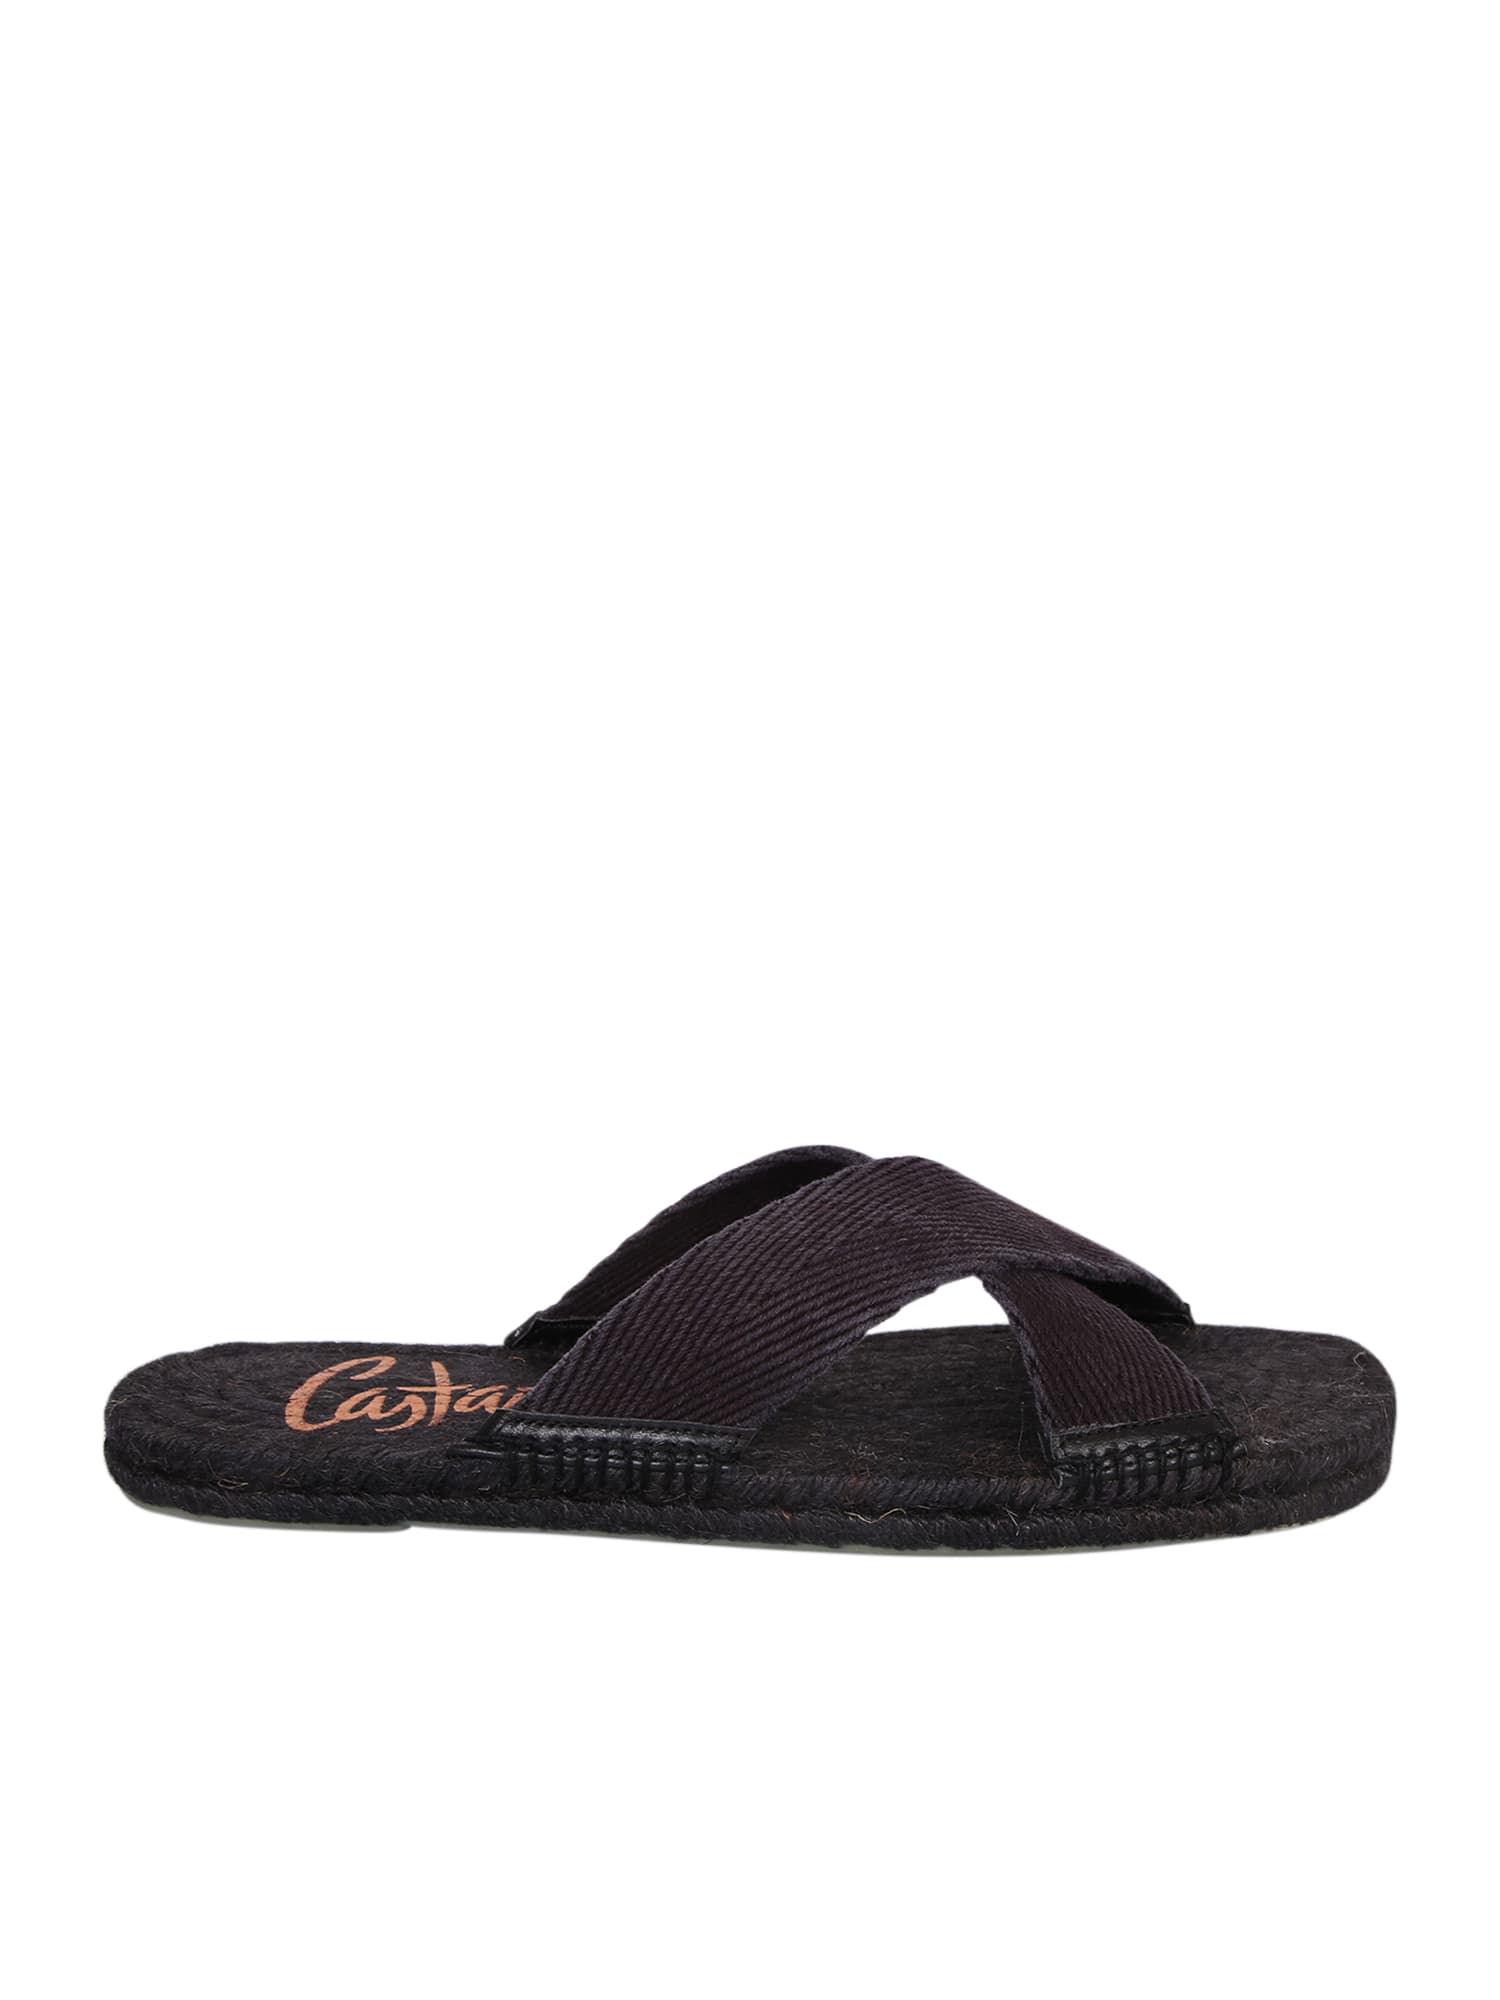 Castañer Agora 002 Sandals